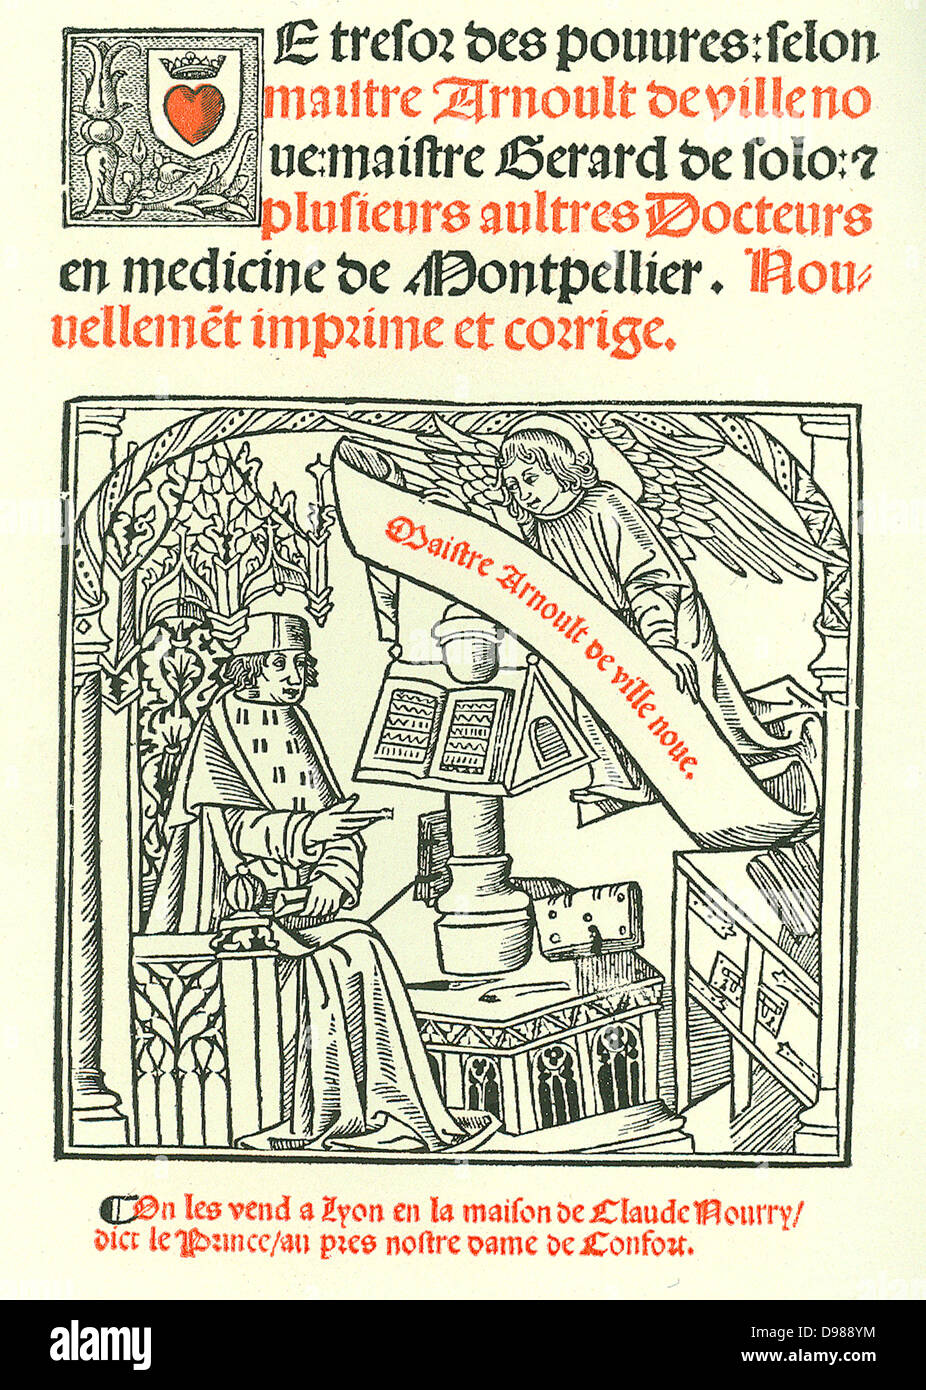 Pagina del titolo di "Le Tresor des Pouvres', Lione, 1527 da Arnaldus di Villanova. Arnaldus (1235-1311), astrologo catalano, alchimista, medico e traduttore di testi medici dall'arabo. Foto Stock